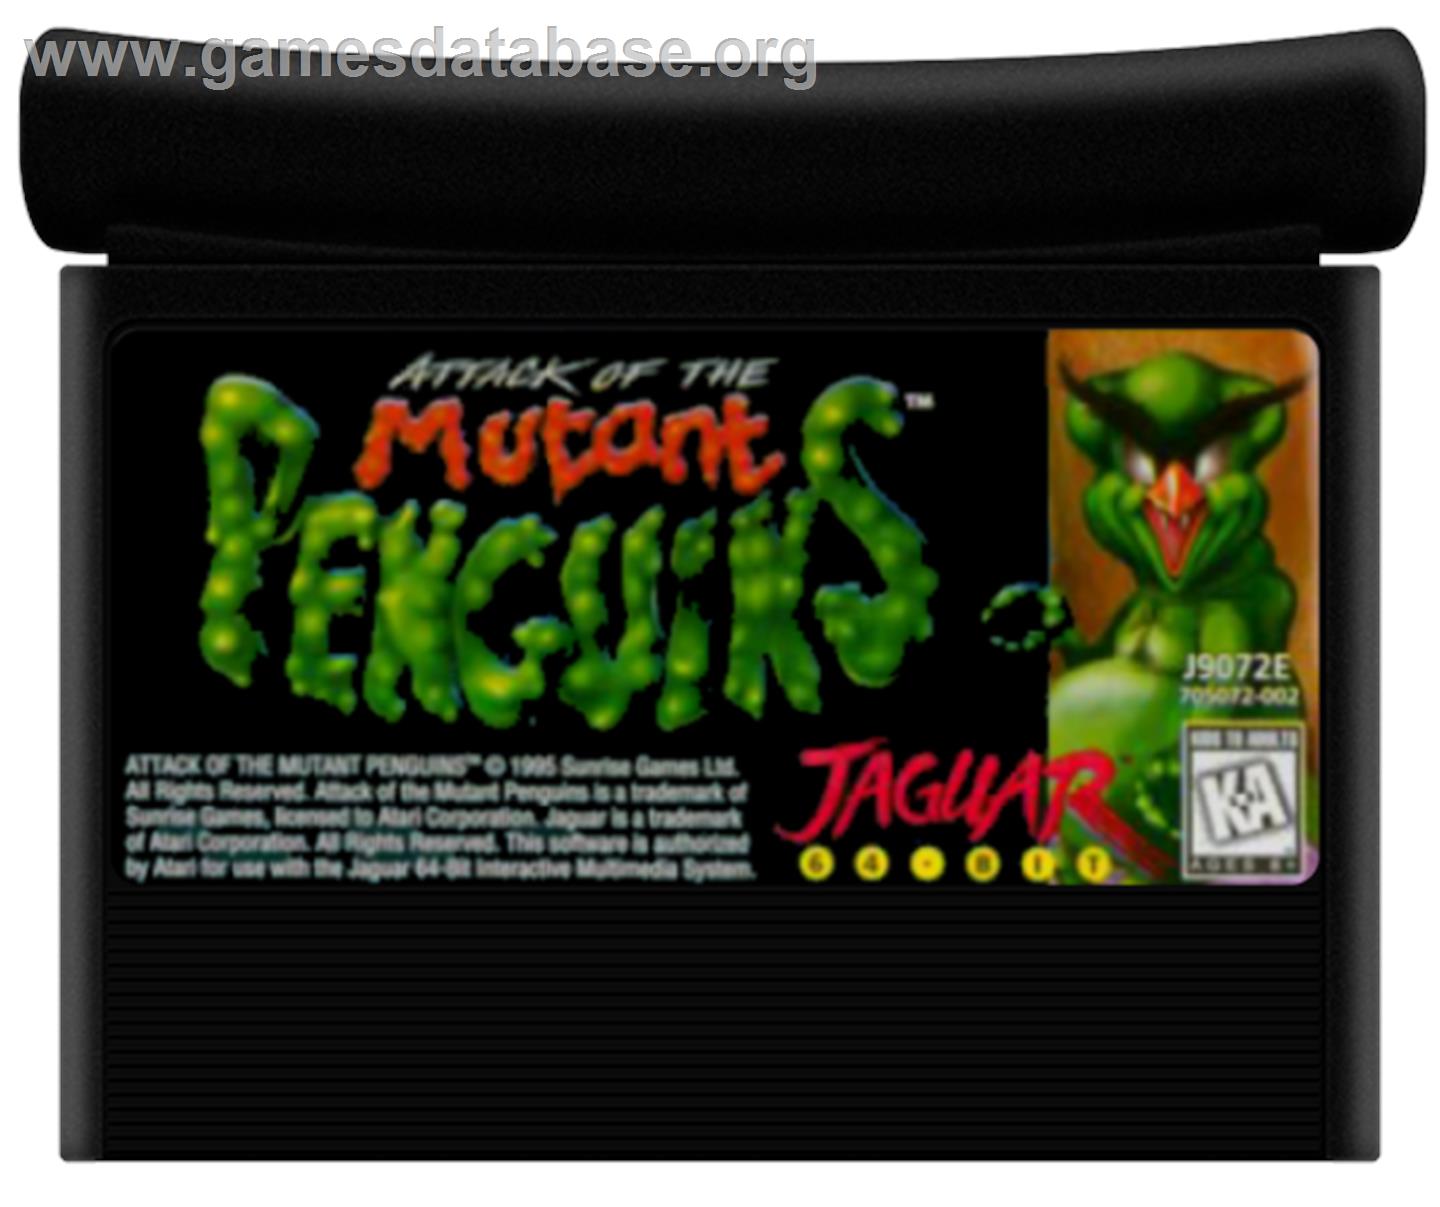 Attack of the Mutant Penguins - Atari Jaguar - Artwork - Cartridge